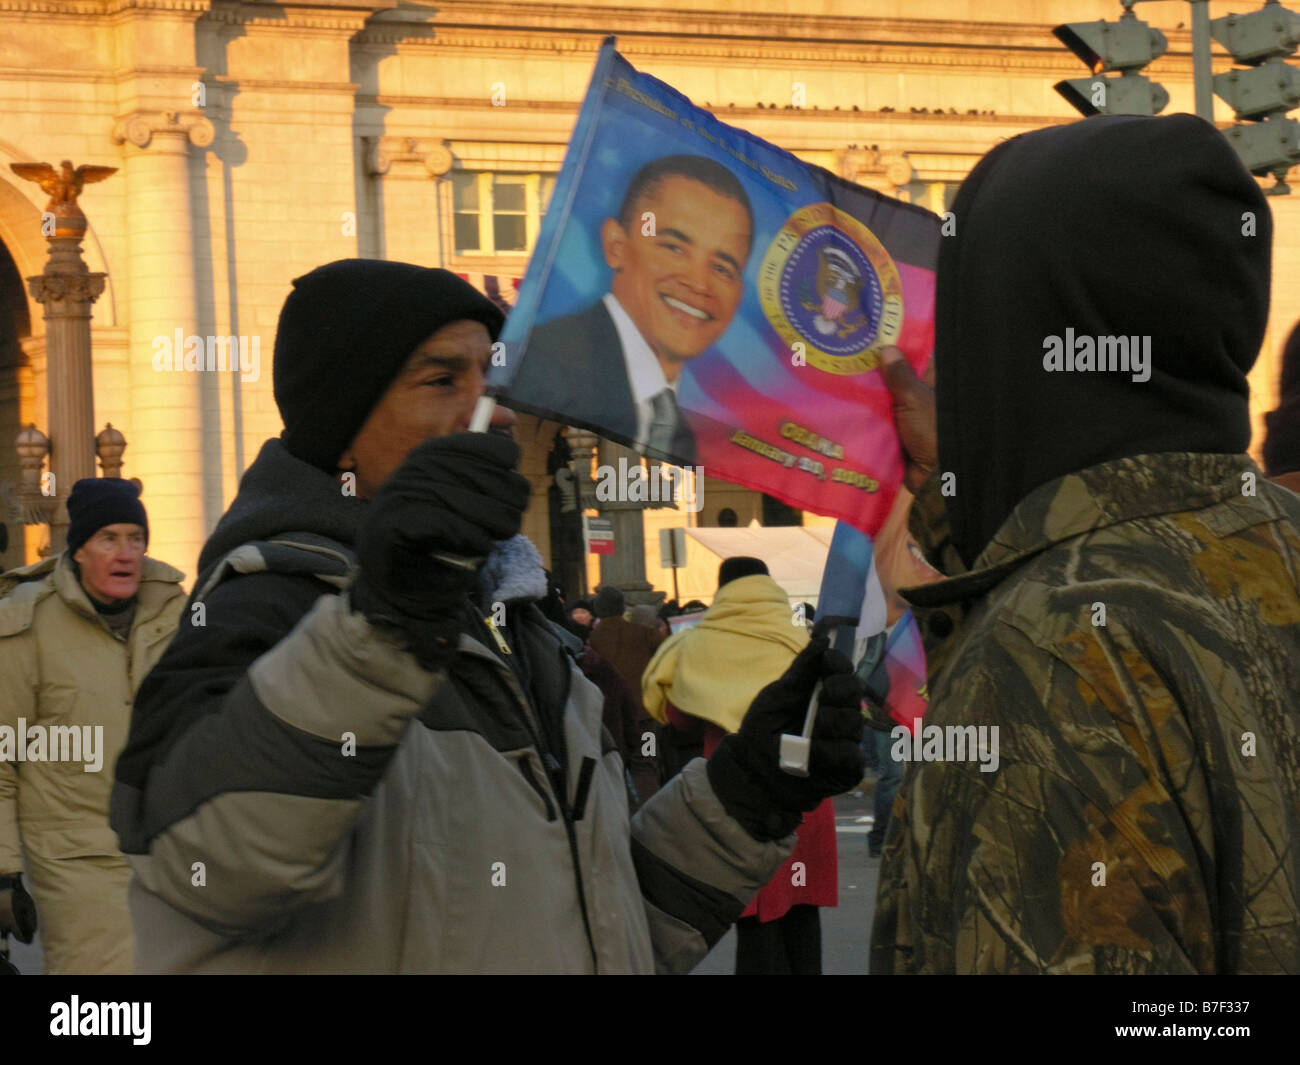 Afrikanisch-amerikanischer Mann feiert die Amtseinführung von Barack Obama, Amerikas erster schwarzer Präsident vor der Union Station. Stockfoto